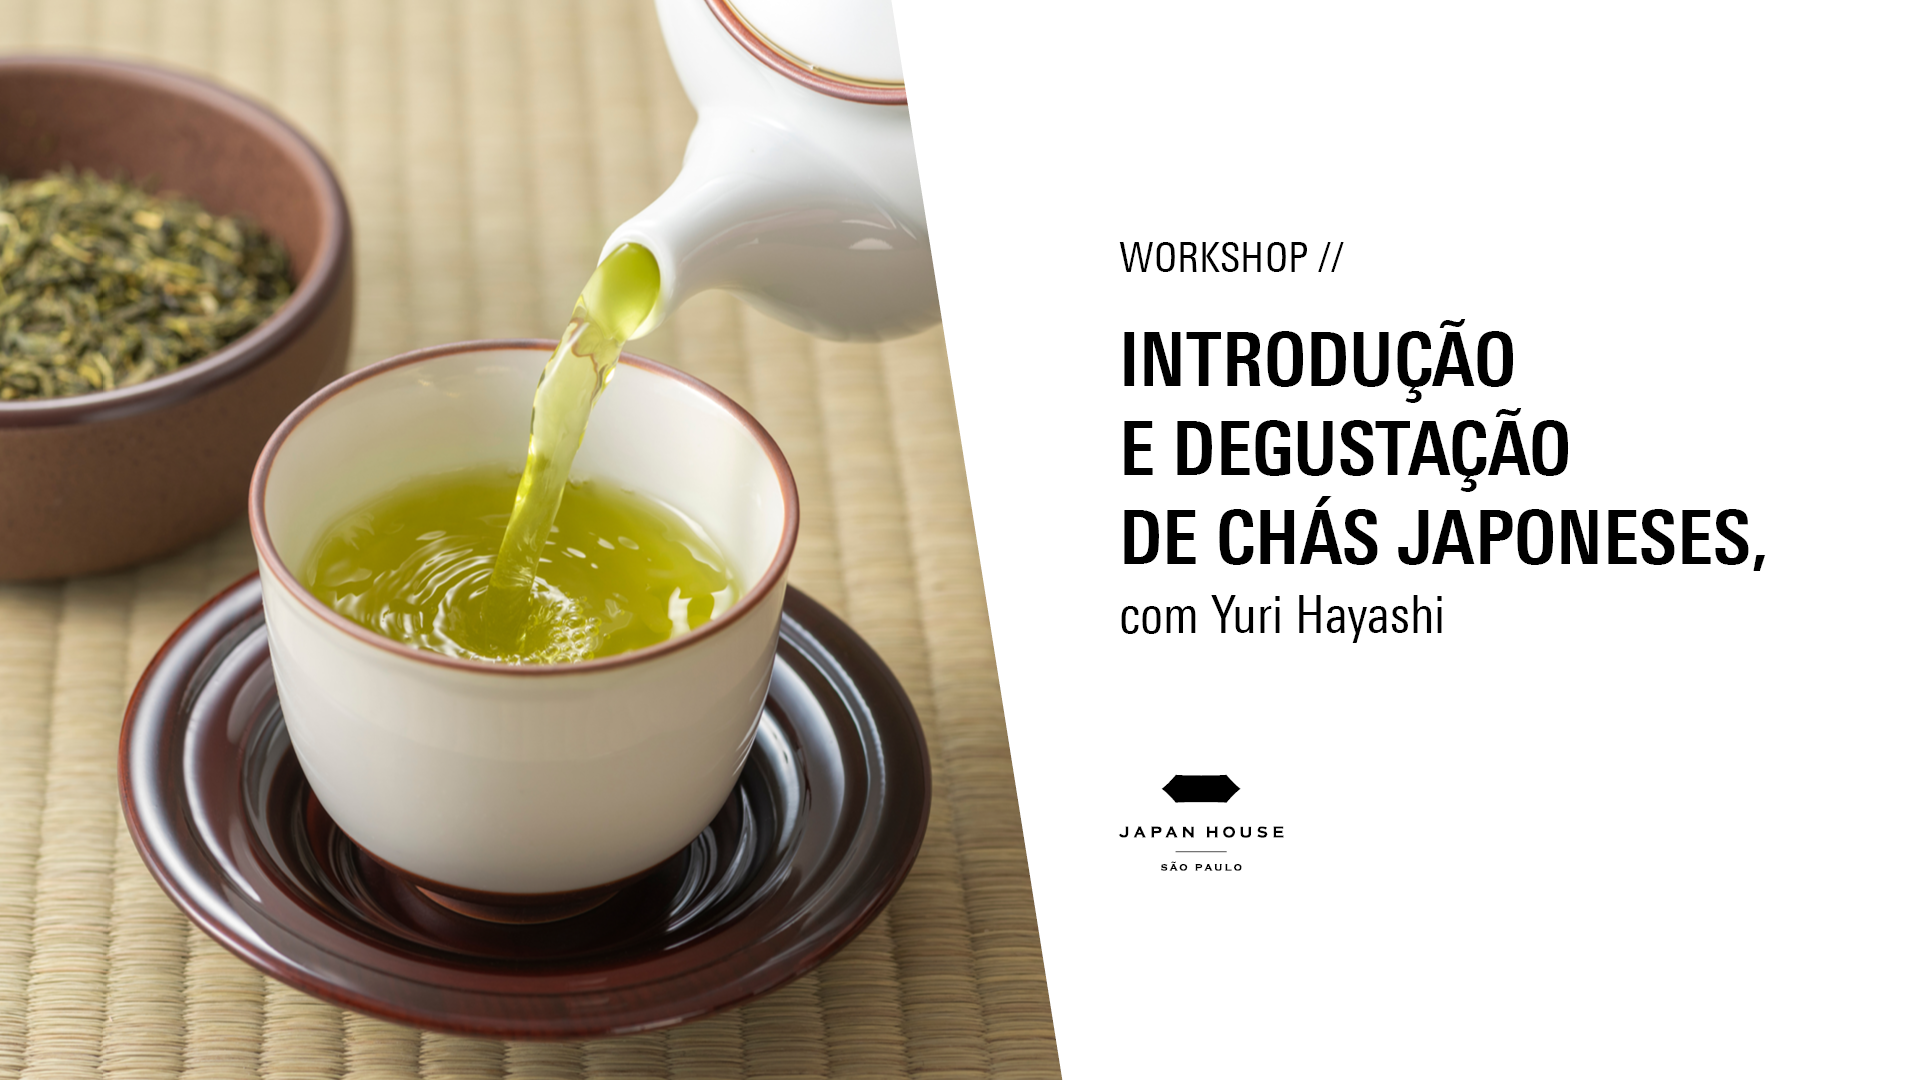 Workshop // Introdução e degustação de chás japoneses, com Yuri Hayashi